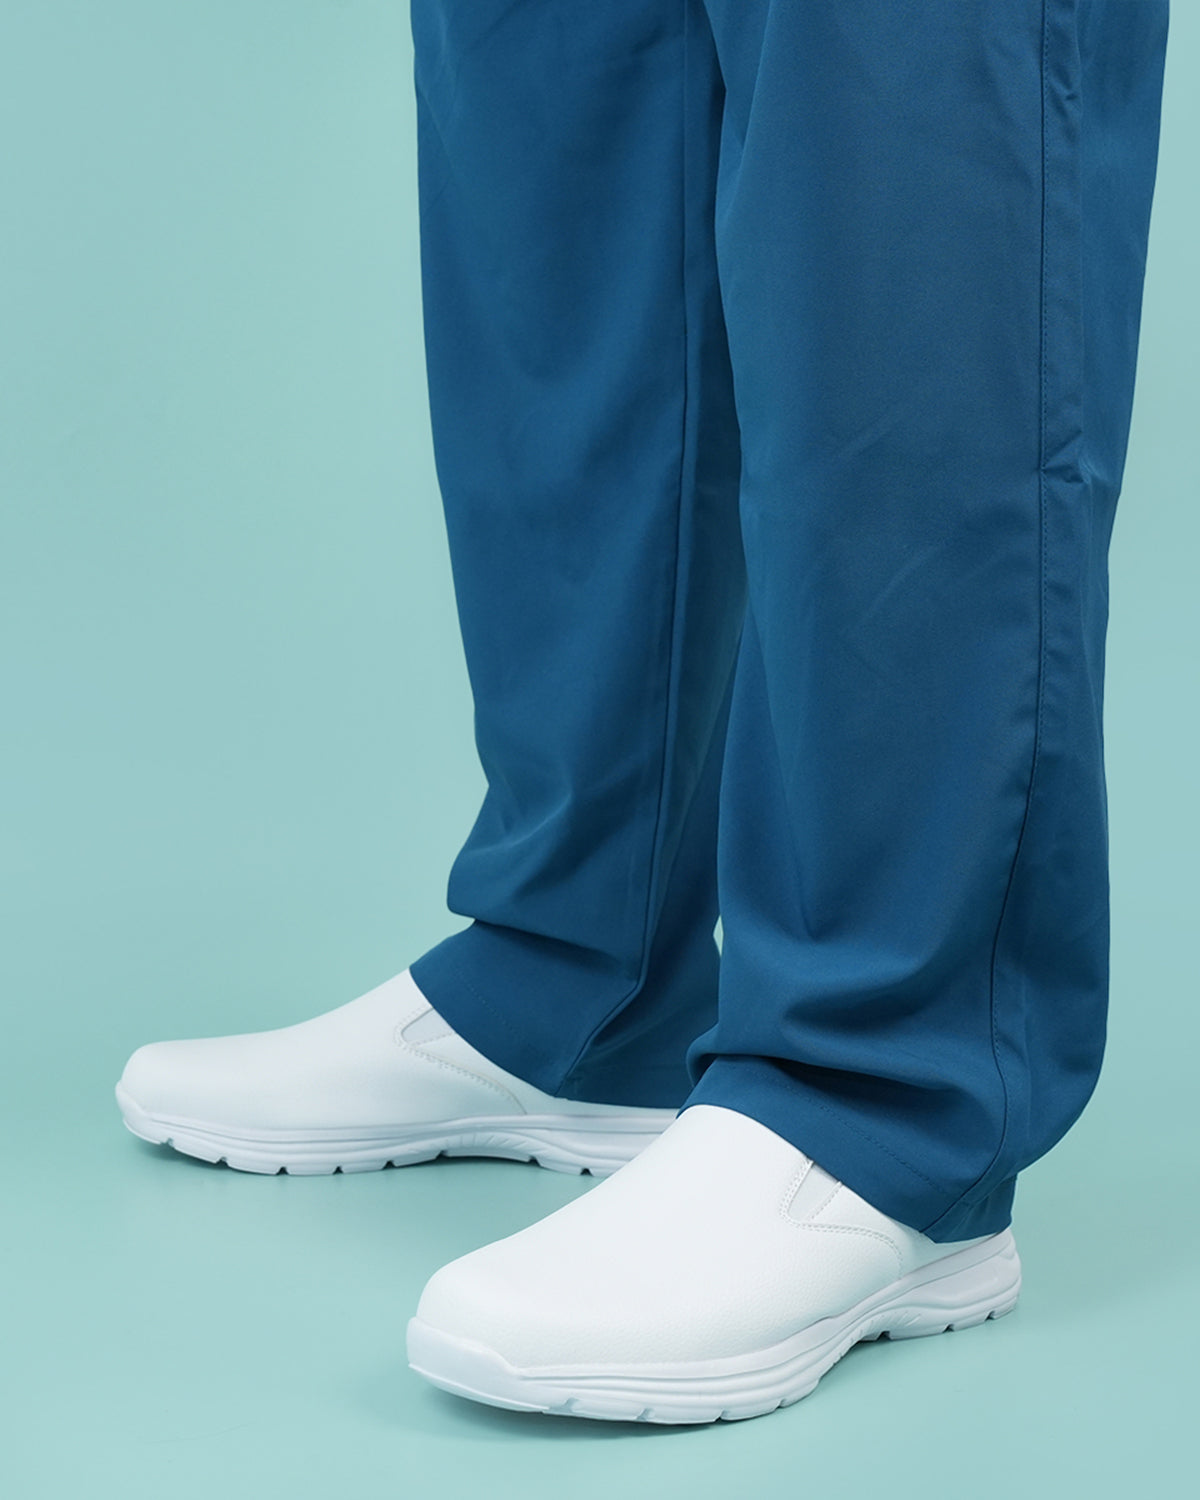 Hawkwell Men's Nurse Shoes - Accio White